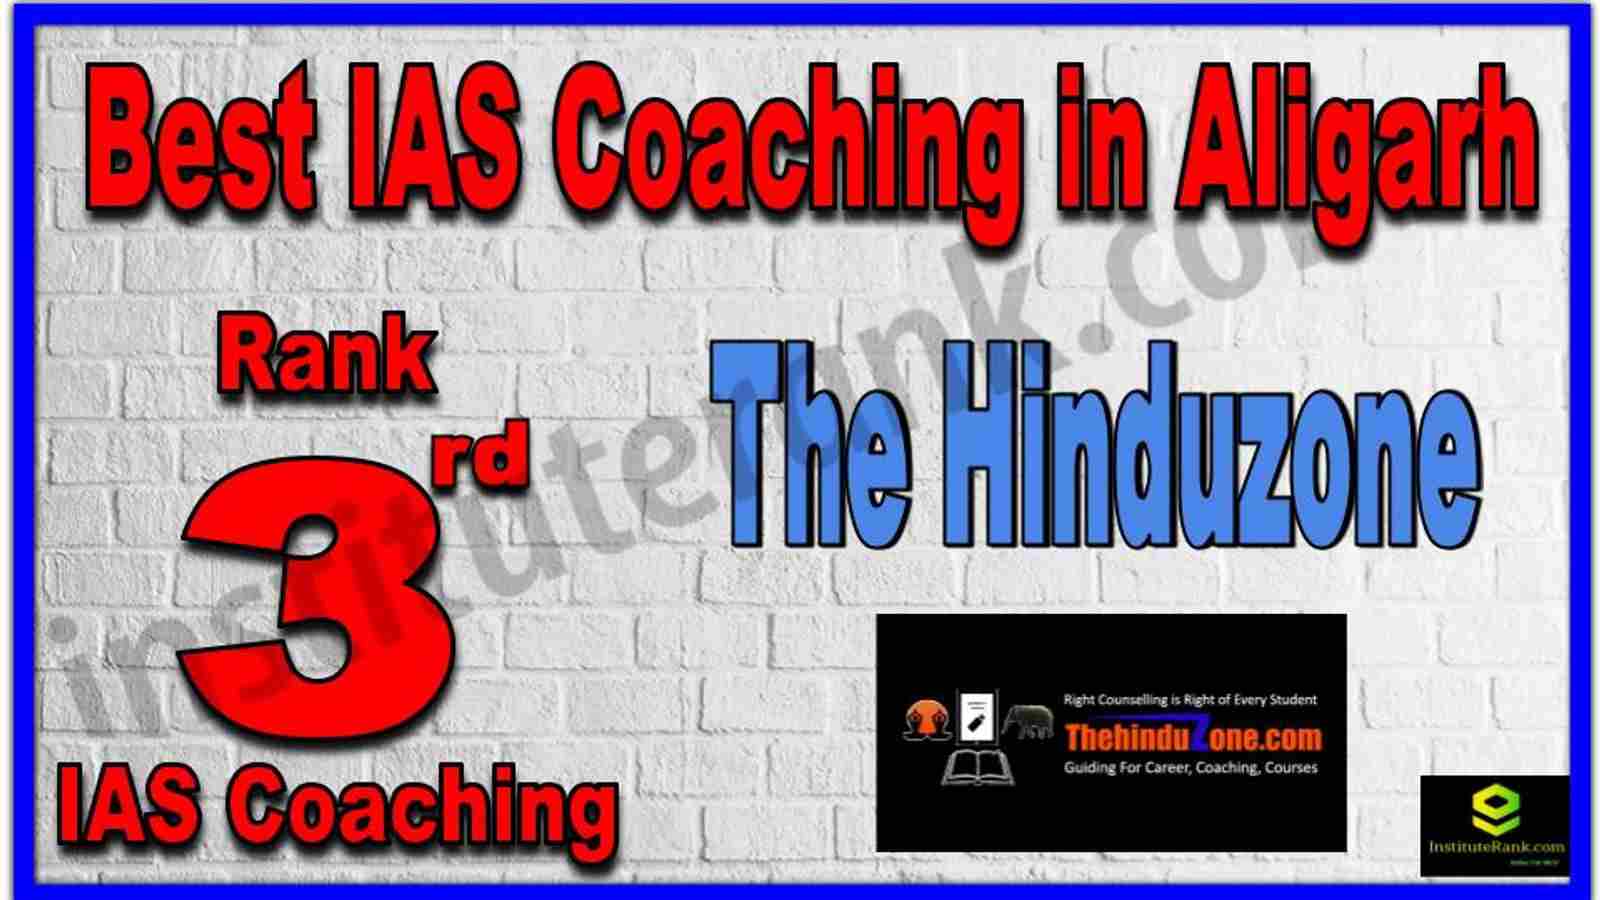 Rank 3rd Best IAS Coaching in Aligarh